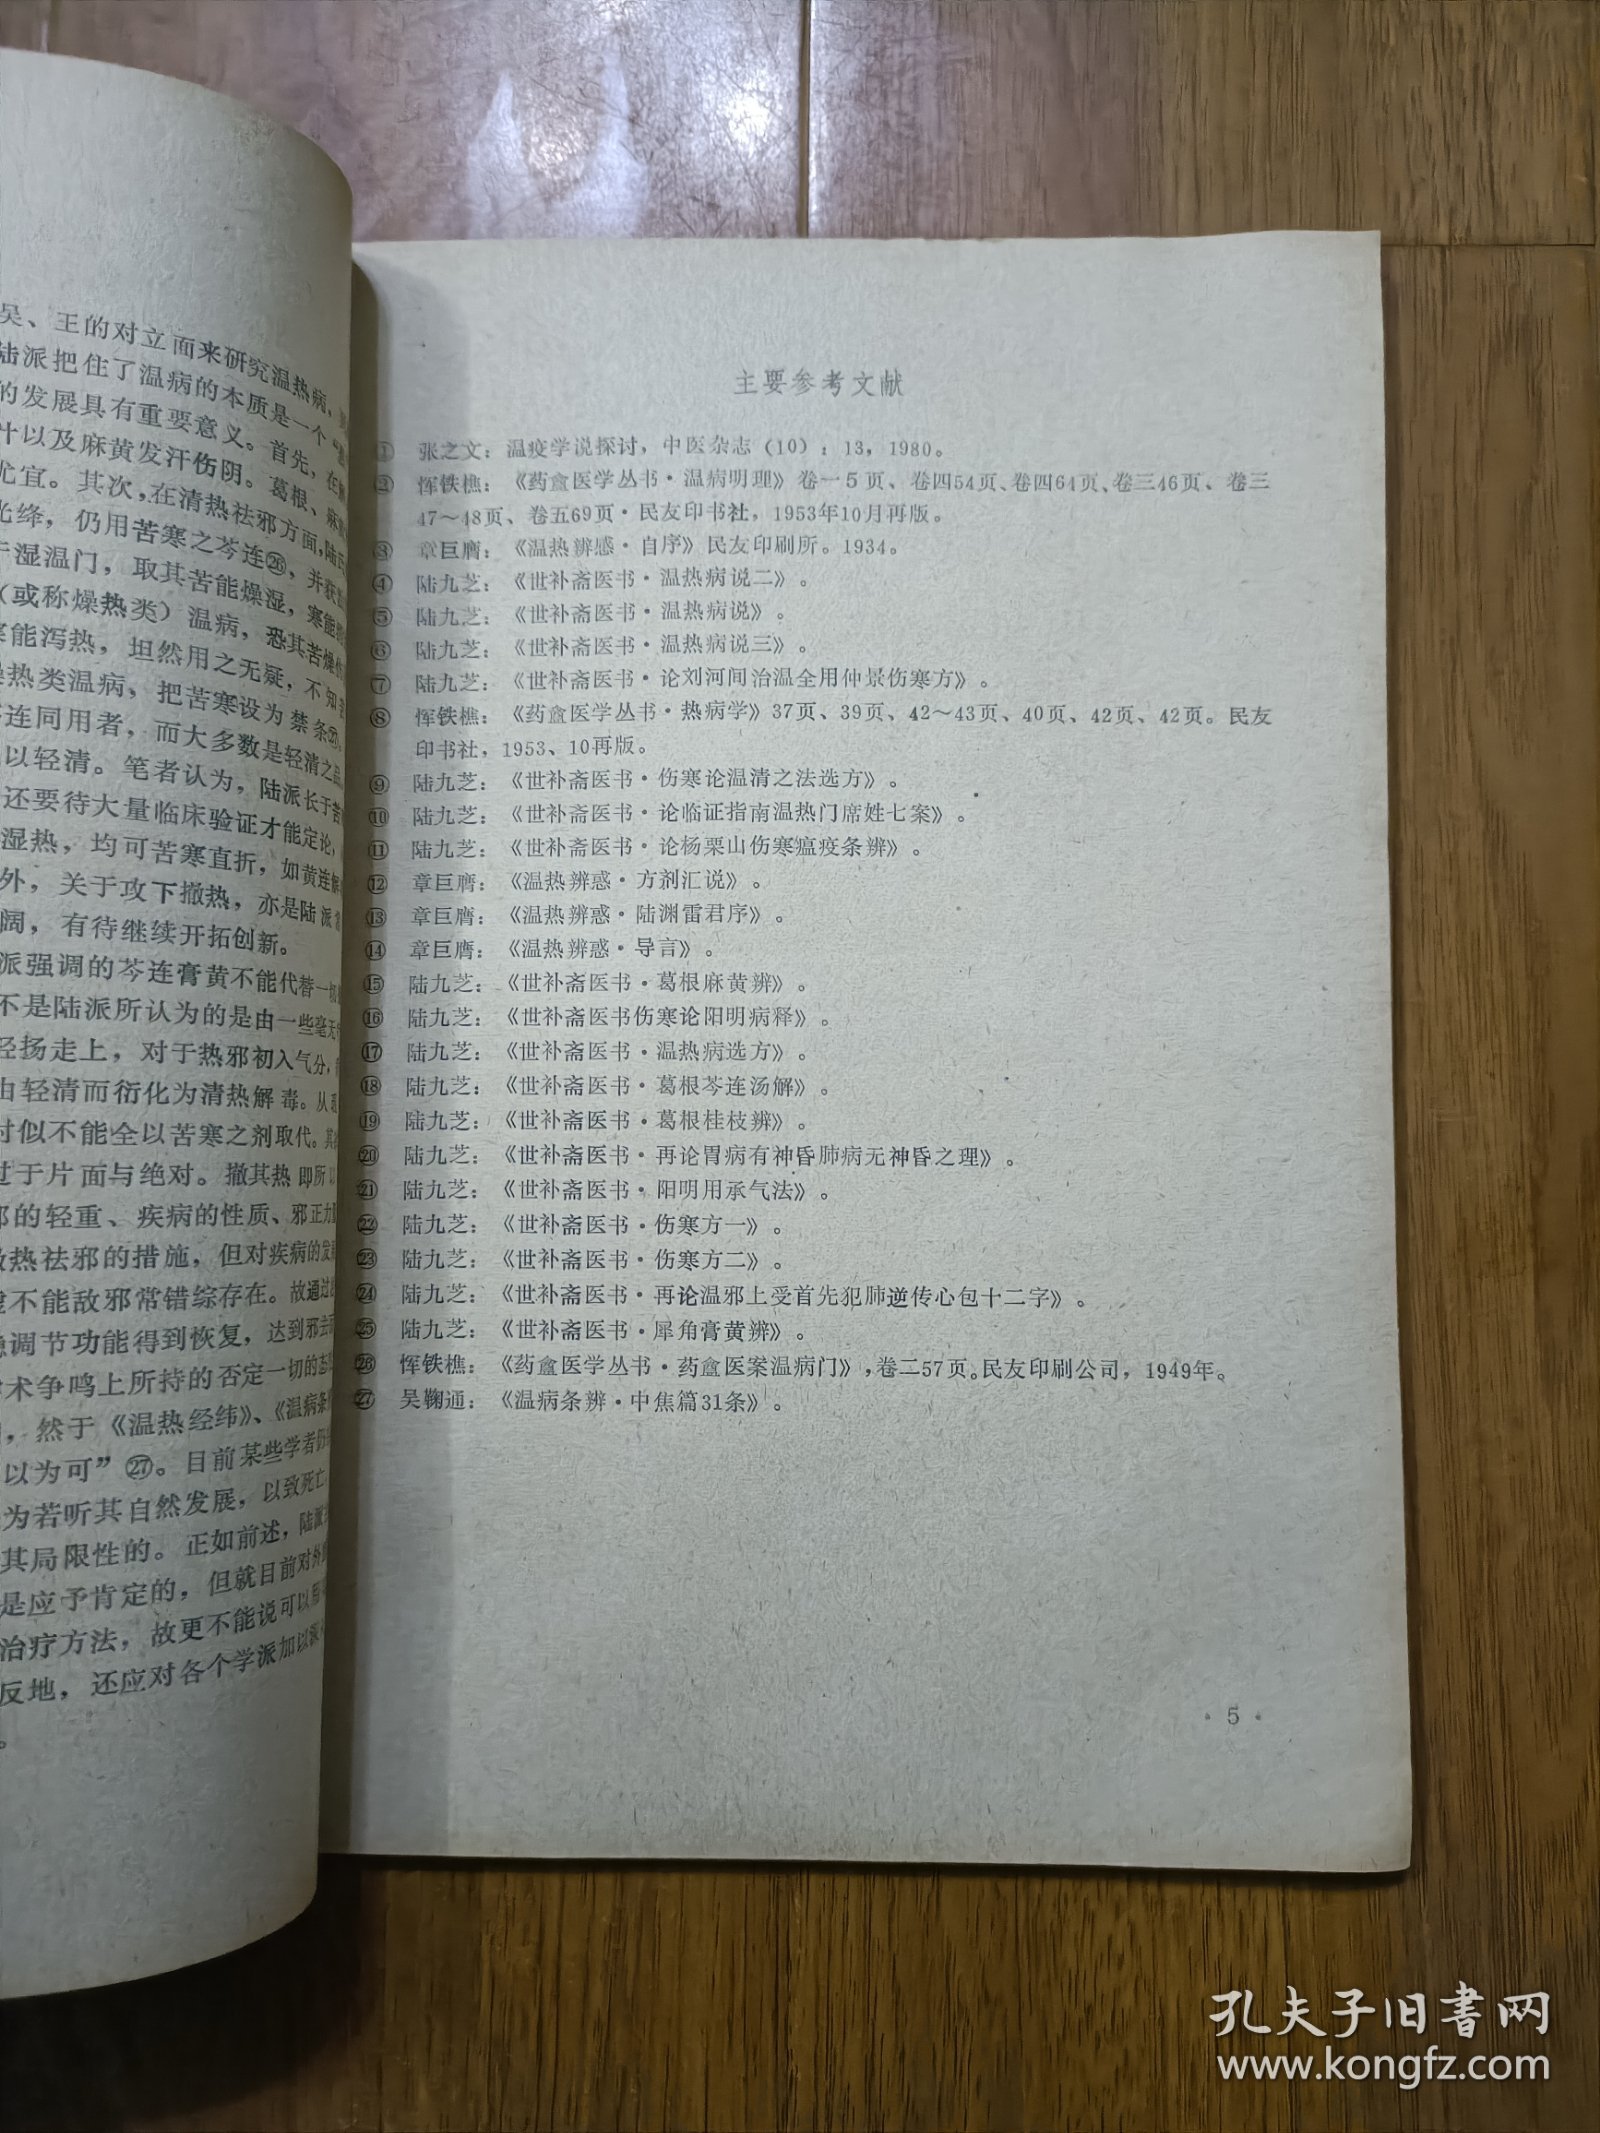 成都中医学院附属医院 1981——2. 15 资料选编